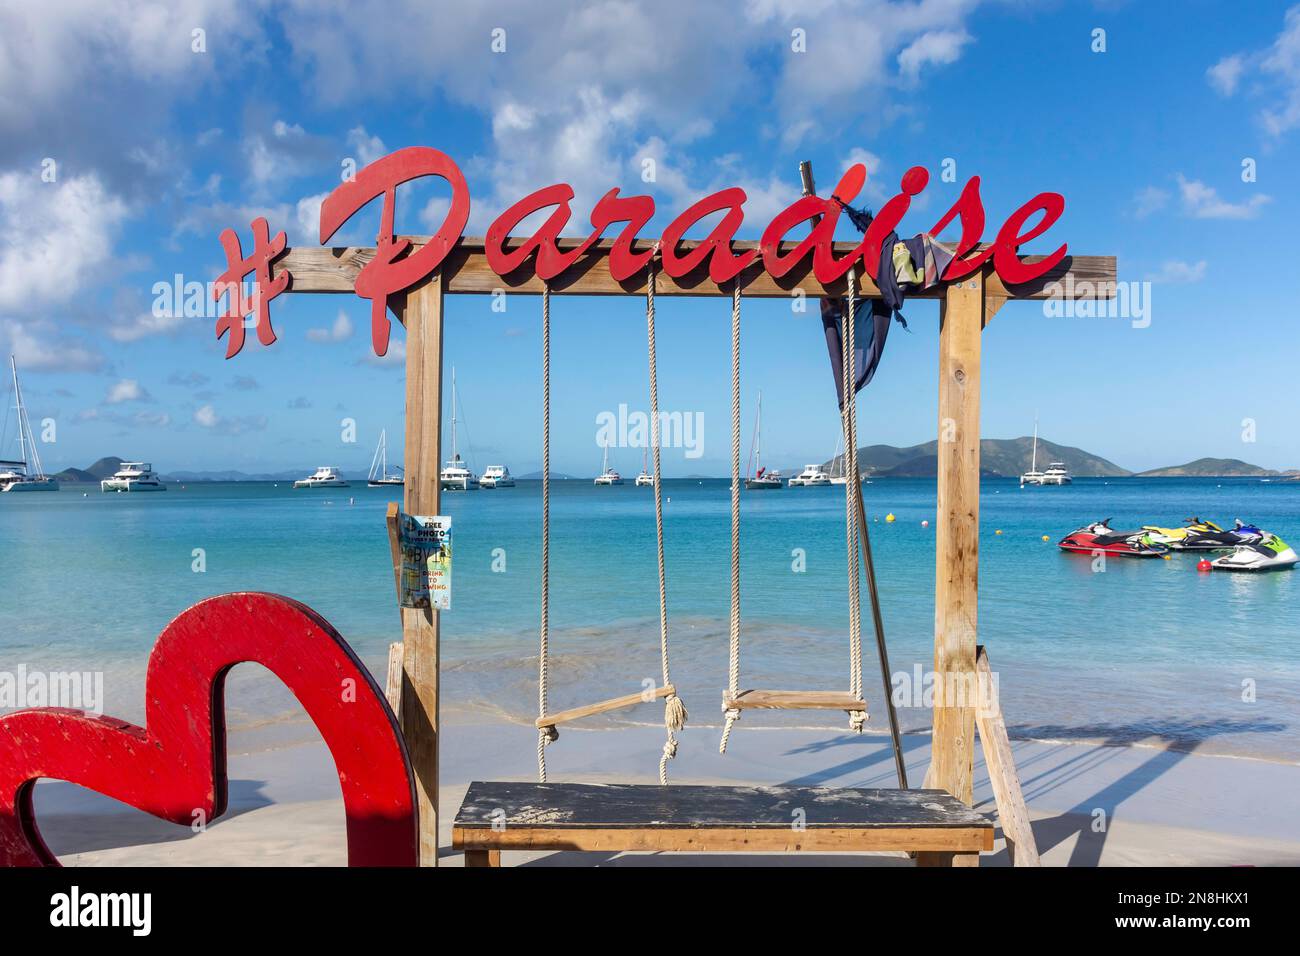 Paradise Club Swing am Strand, Cane Garden Bay, Tortola, die Britischen Jungferninseln (BVI), die kleinen Antillen, die Karibik Stockfoto